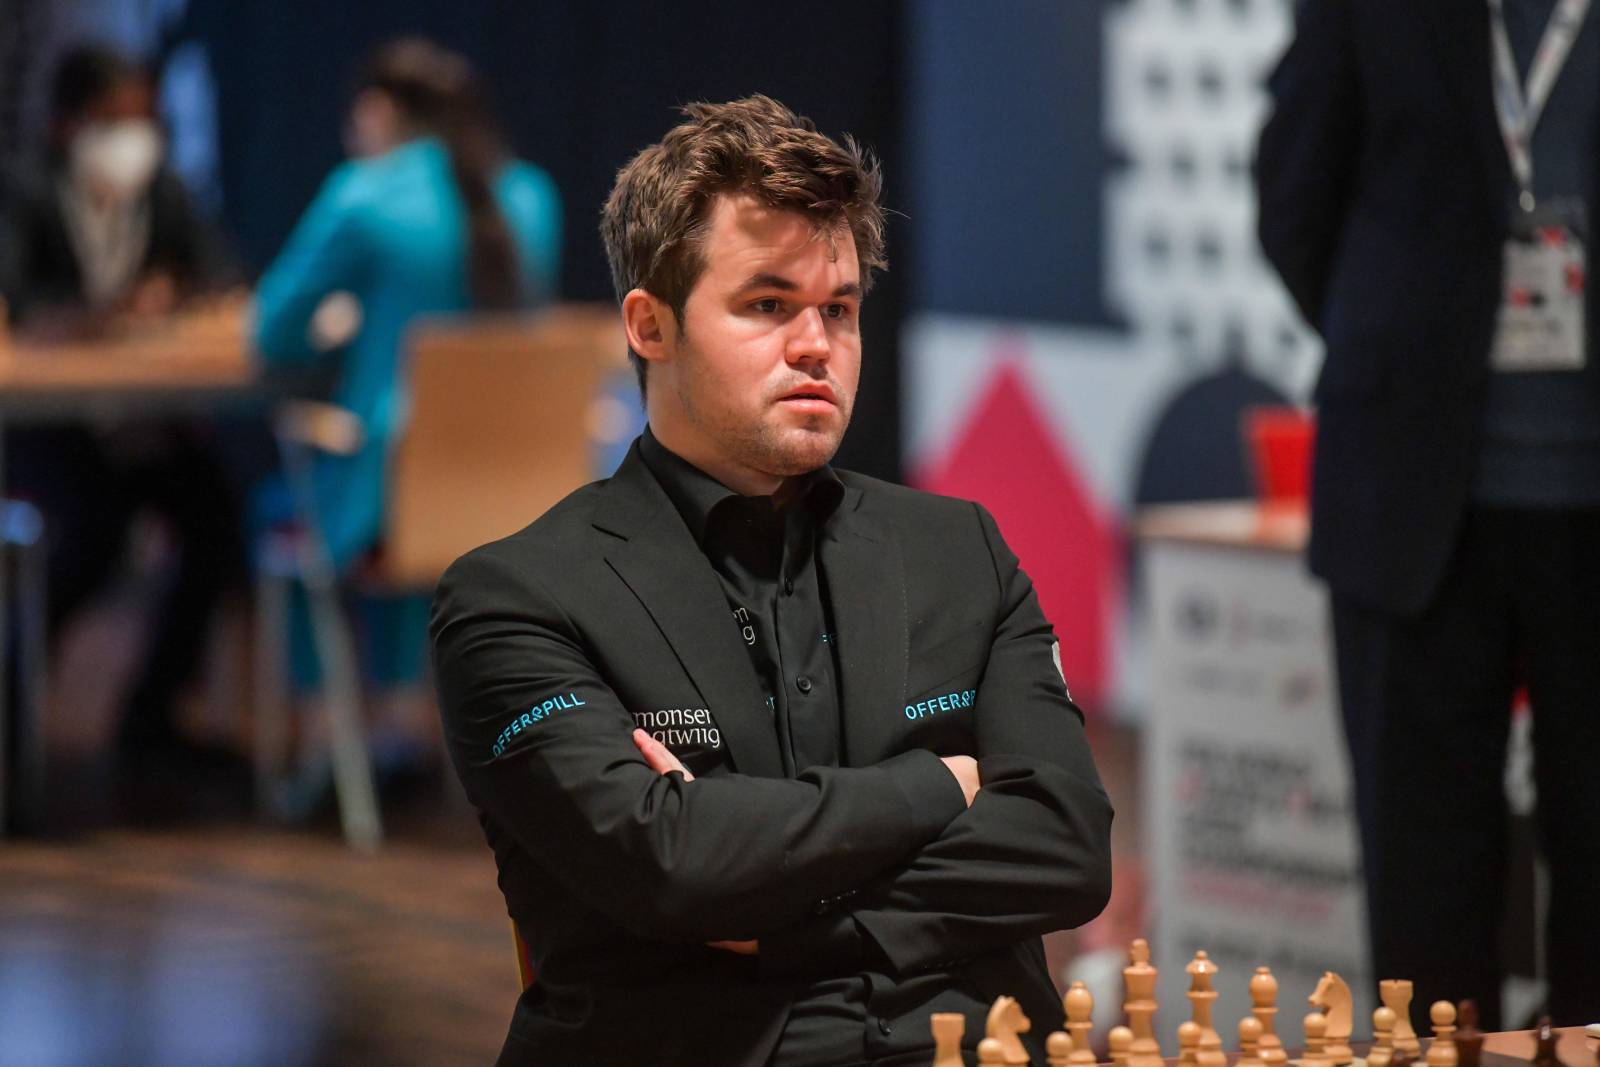 Карлсен психанул на чемпионате мира по быстрым шахматам